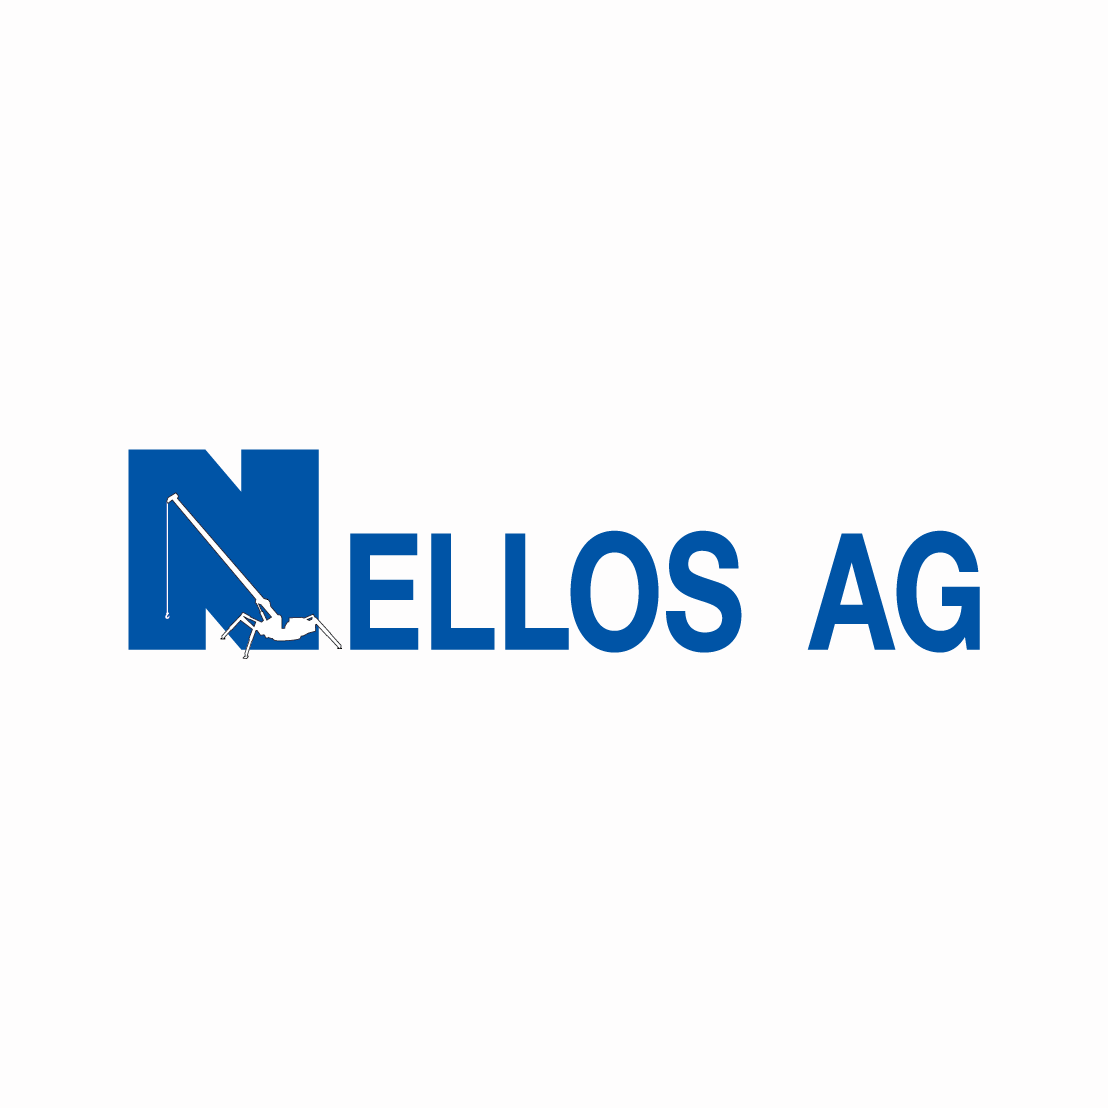 Nellos AG logo